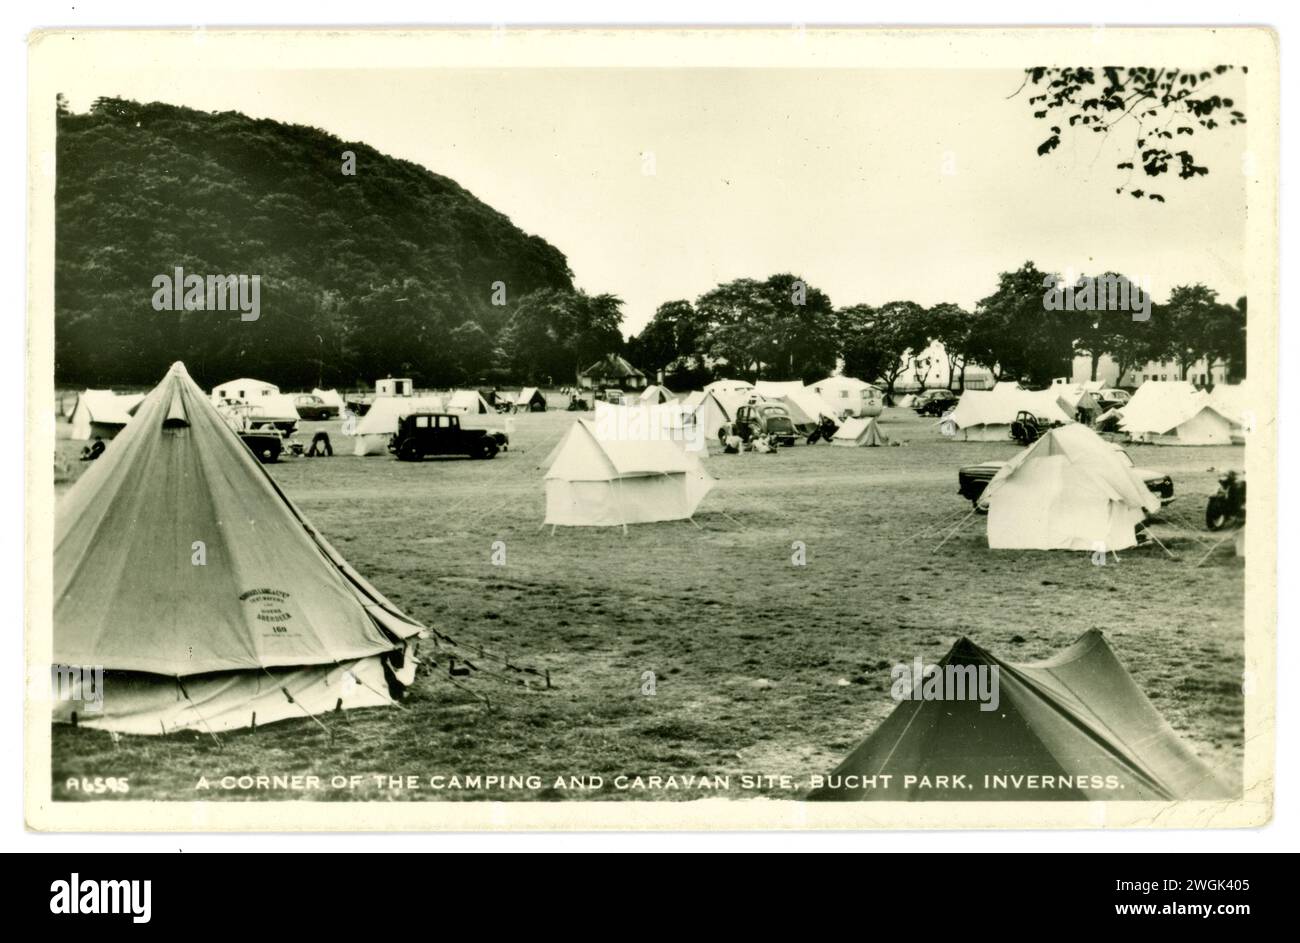 Carte postale originale des années 1950 ou début des années 1960 d'un camping écossais - emplacement de camping et caravane, beaucoup de tentes en toile et toile, vieux véhicules, tentes cloches, à Bught Park, Inverness, Écosse, Royaume-Uni Banque D'Images